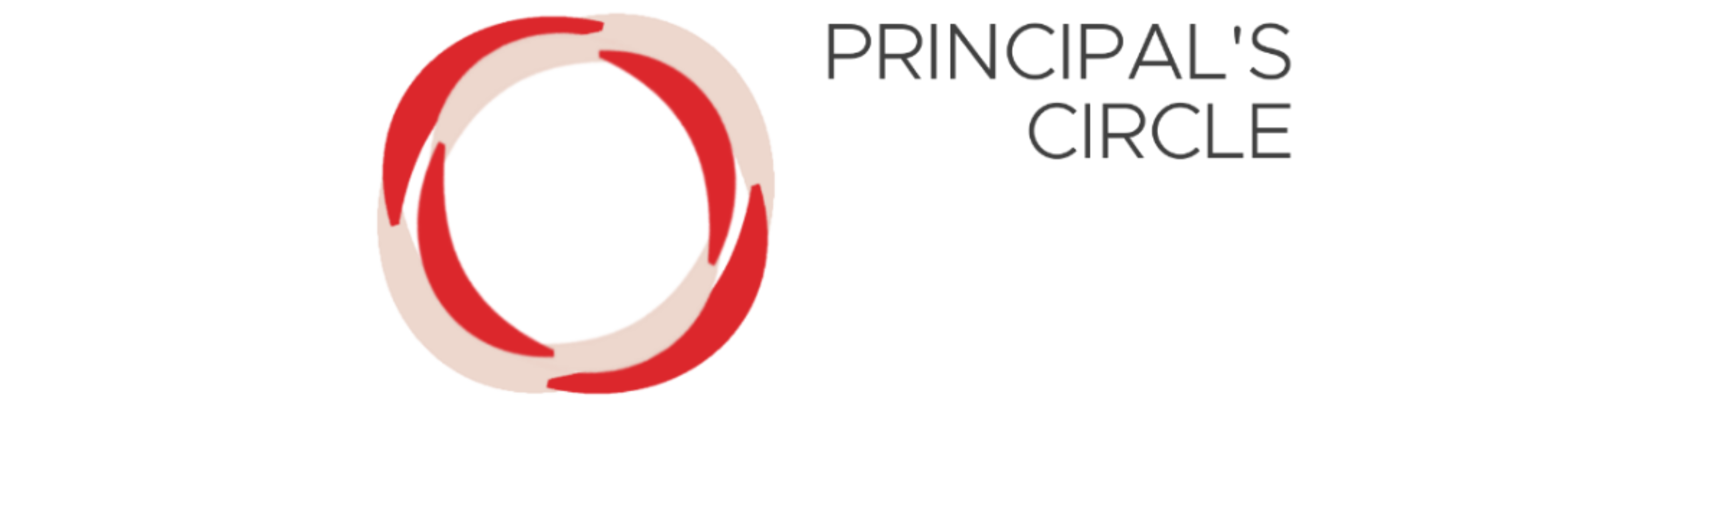 principals circle banner small